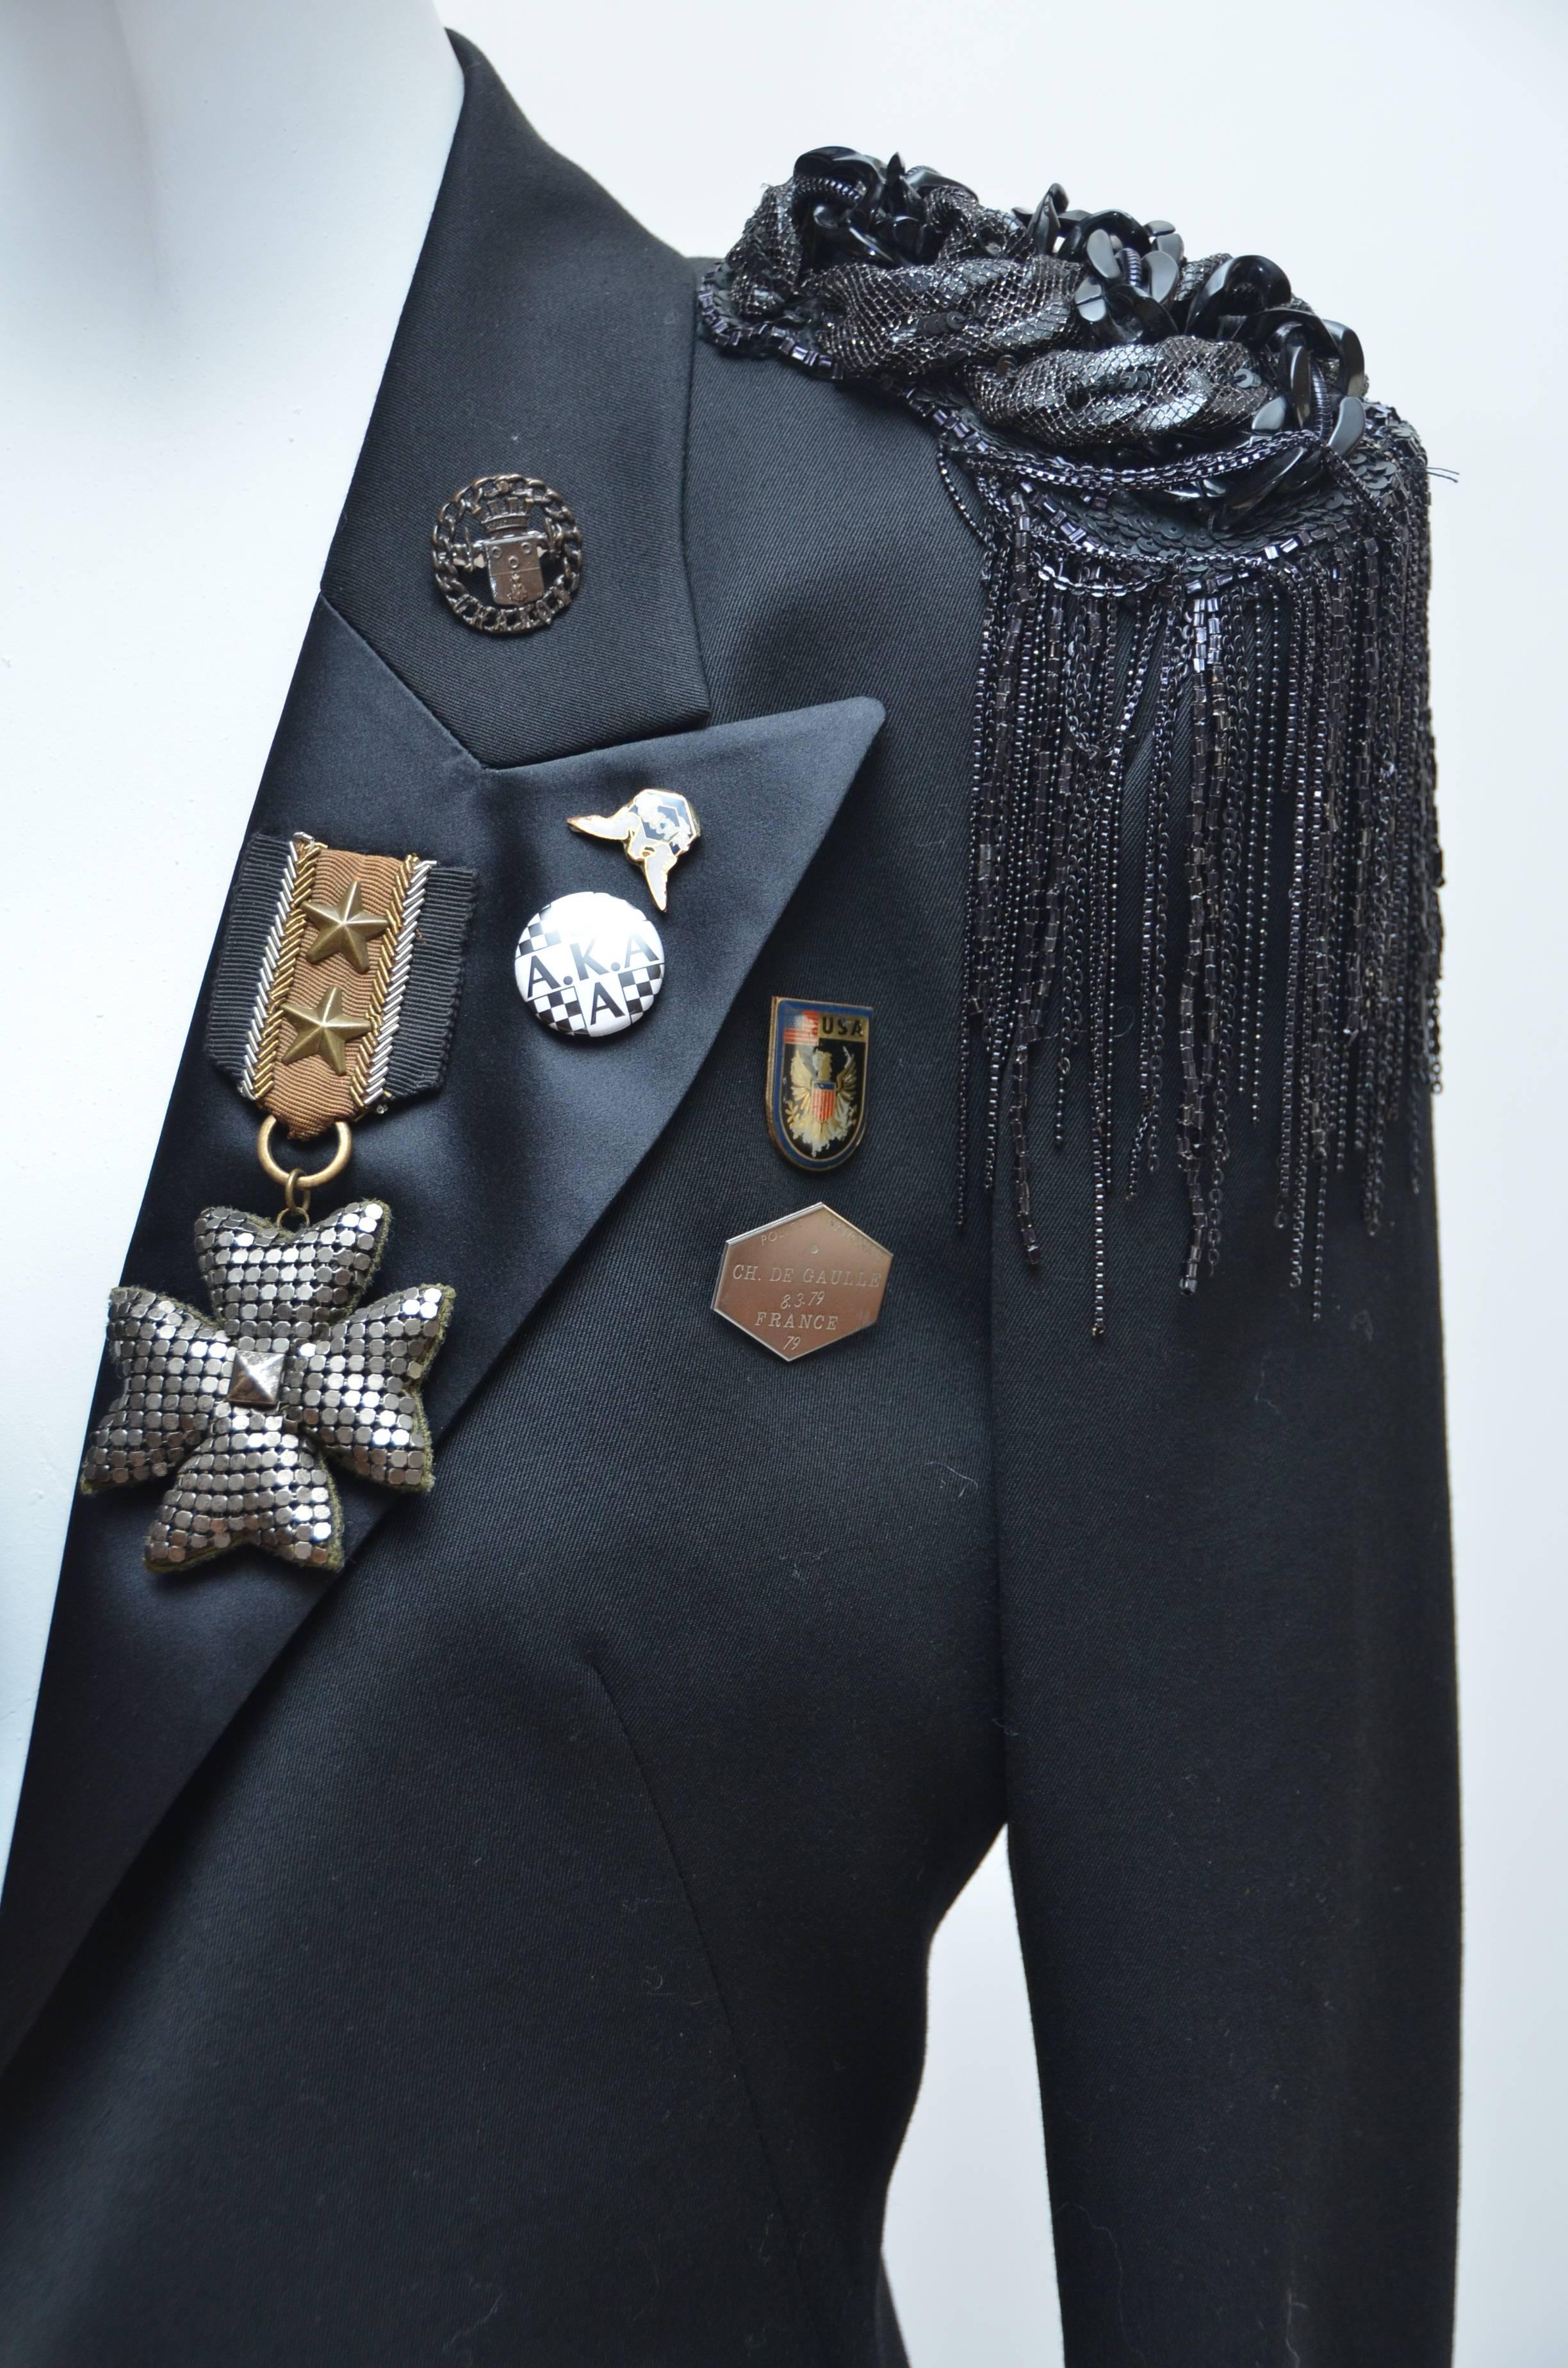 military style tuxedo